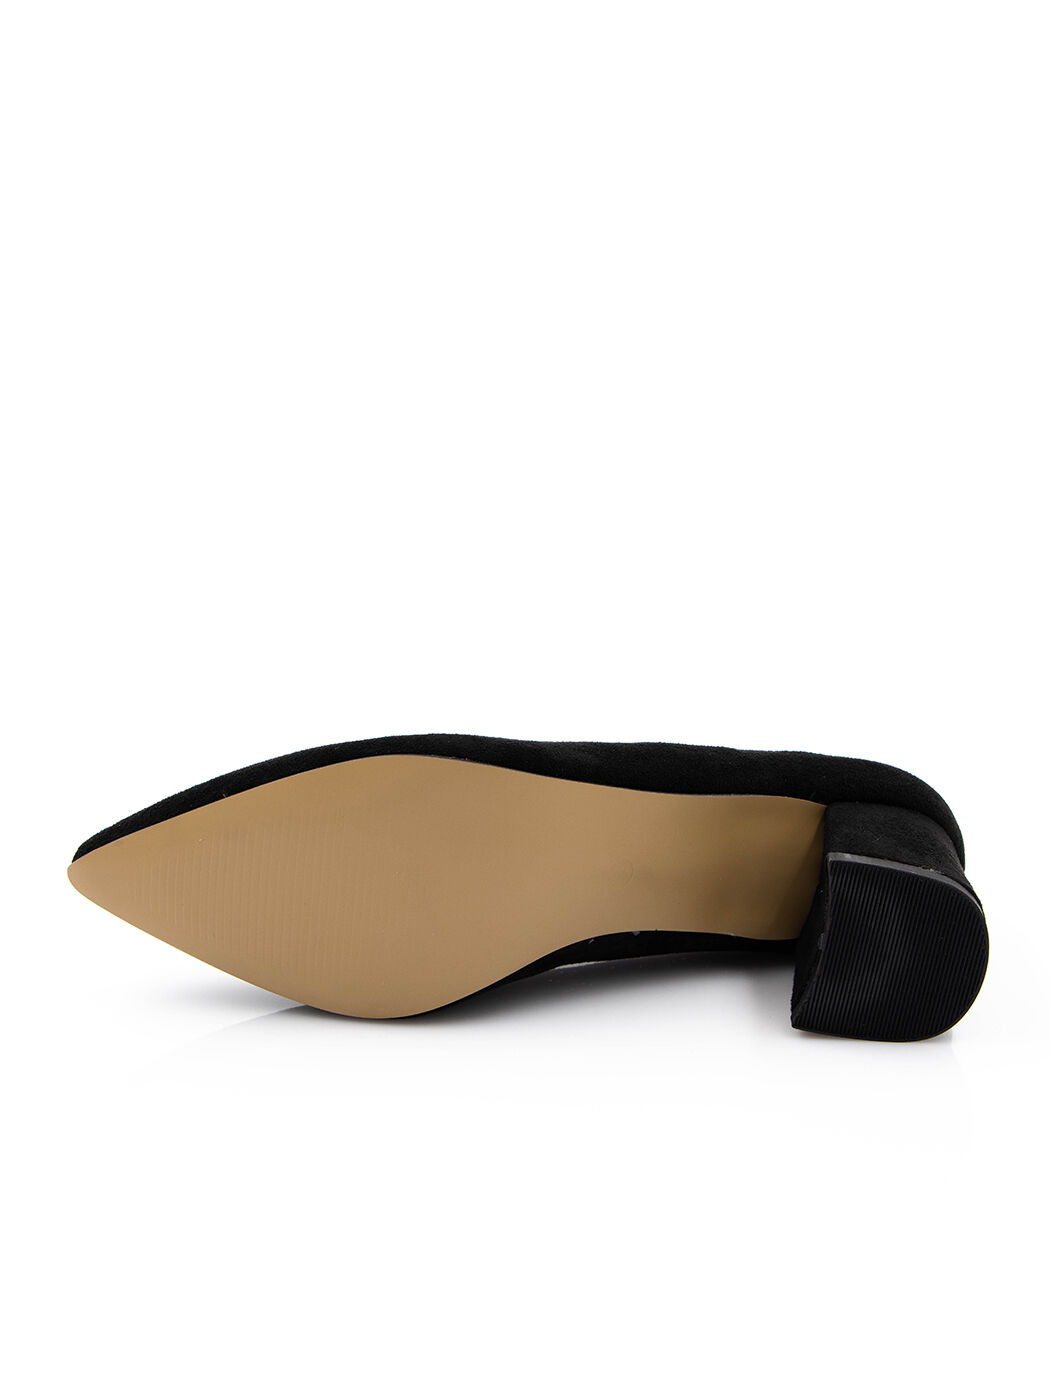 Туфли женские черные экозамша каблук устойчивый демисезон от производителя 8M вид 0